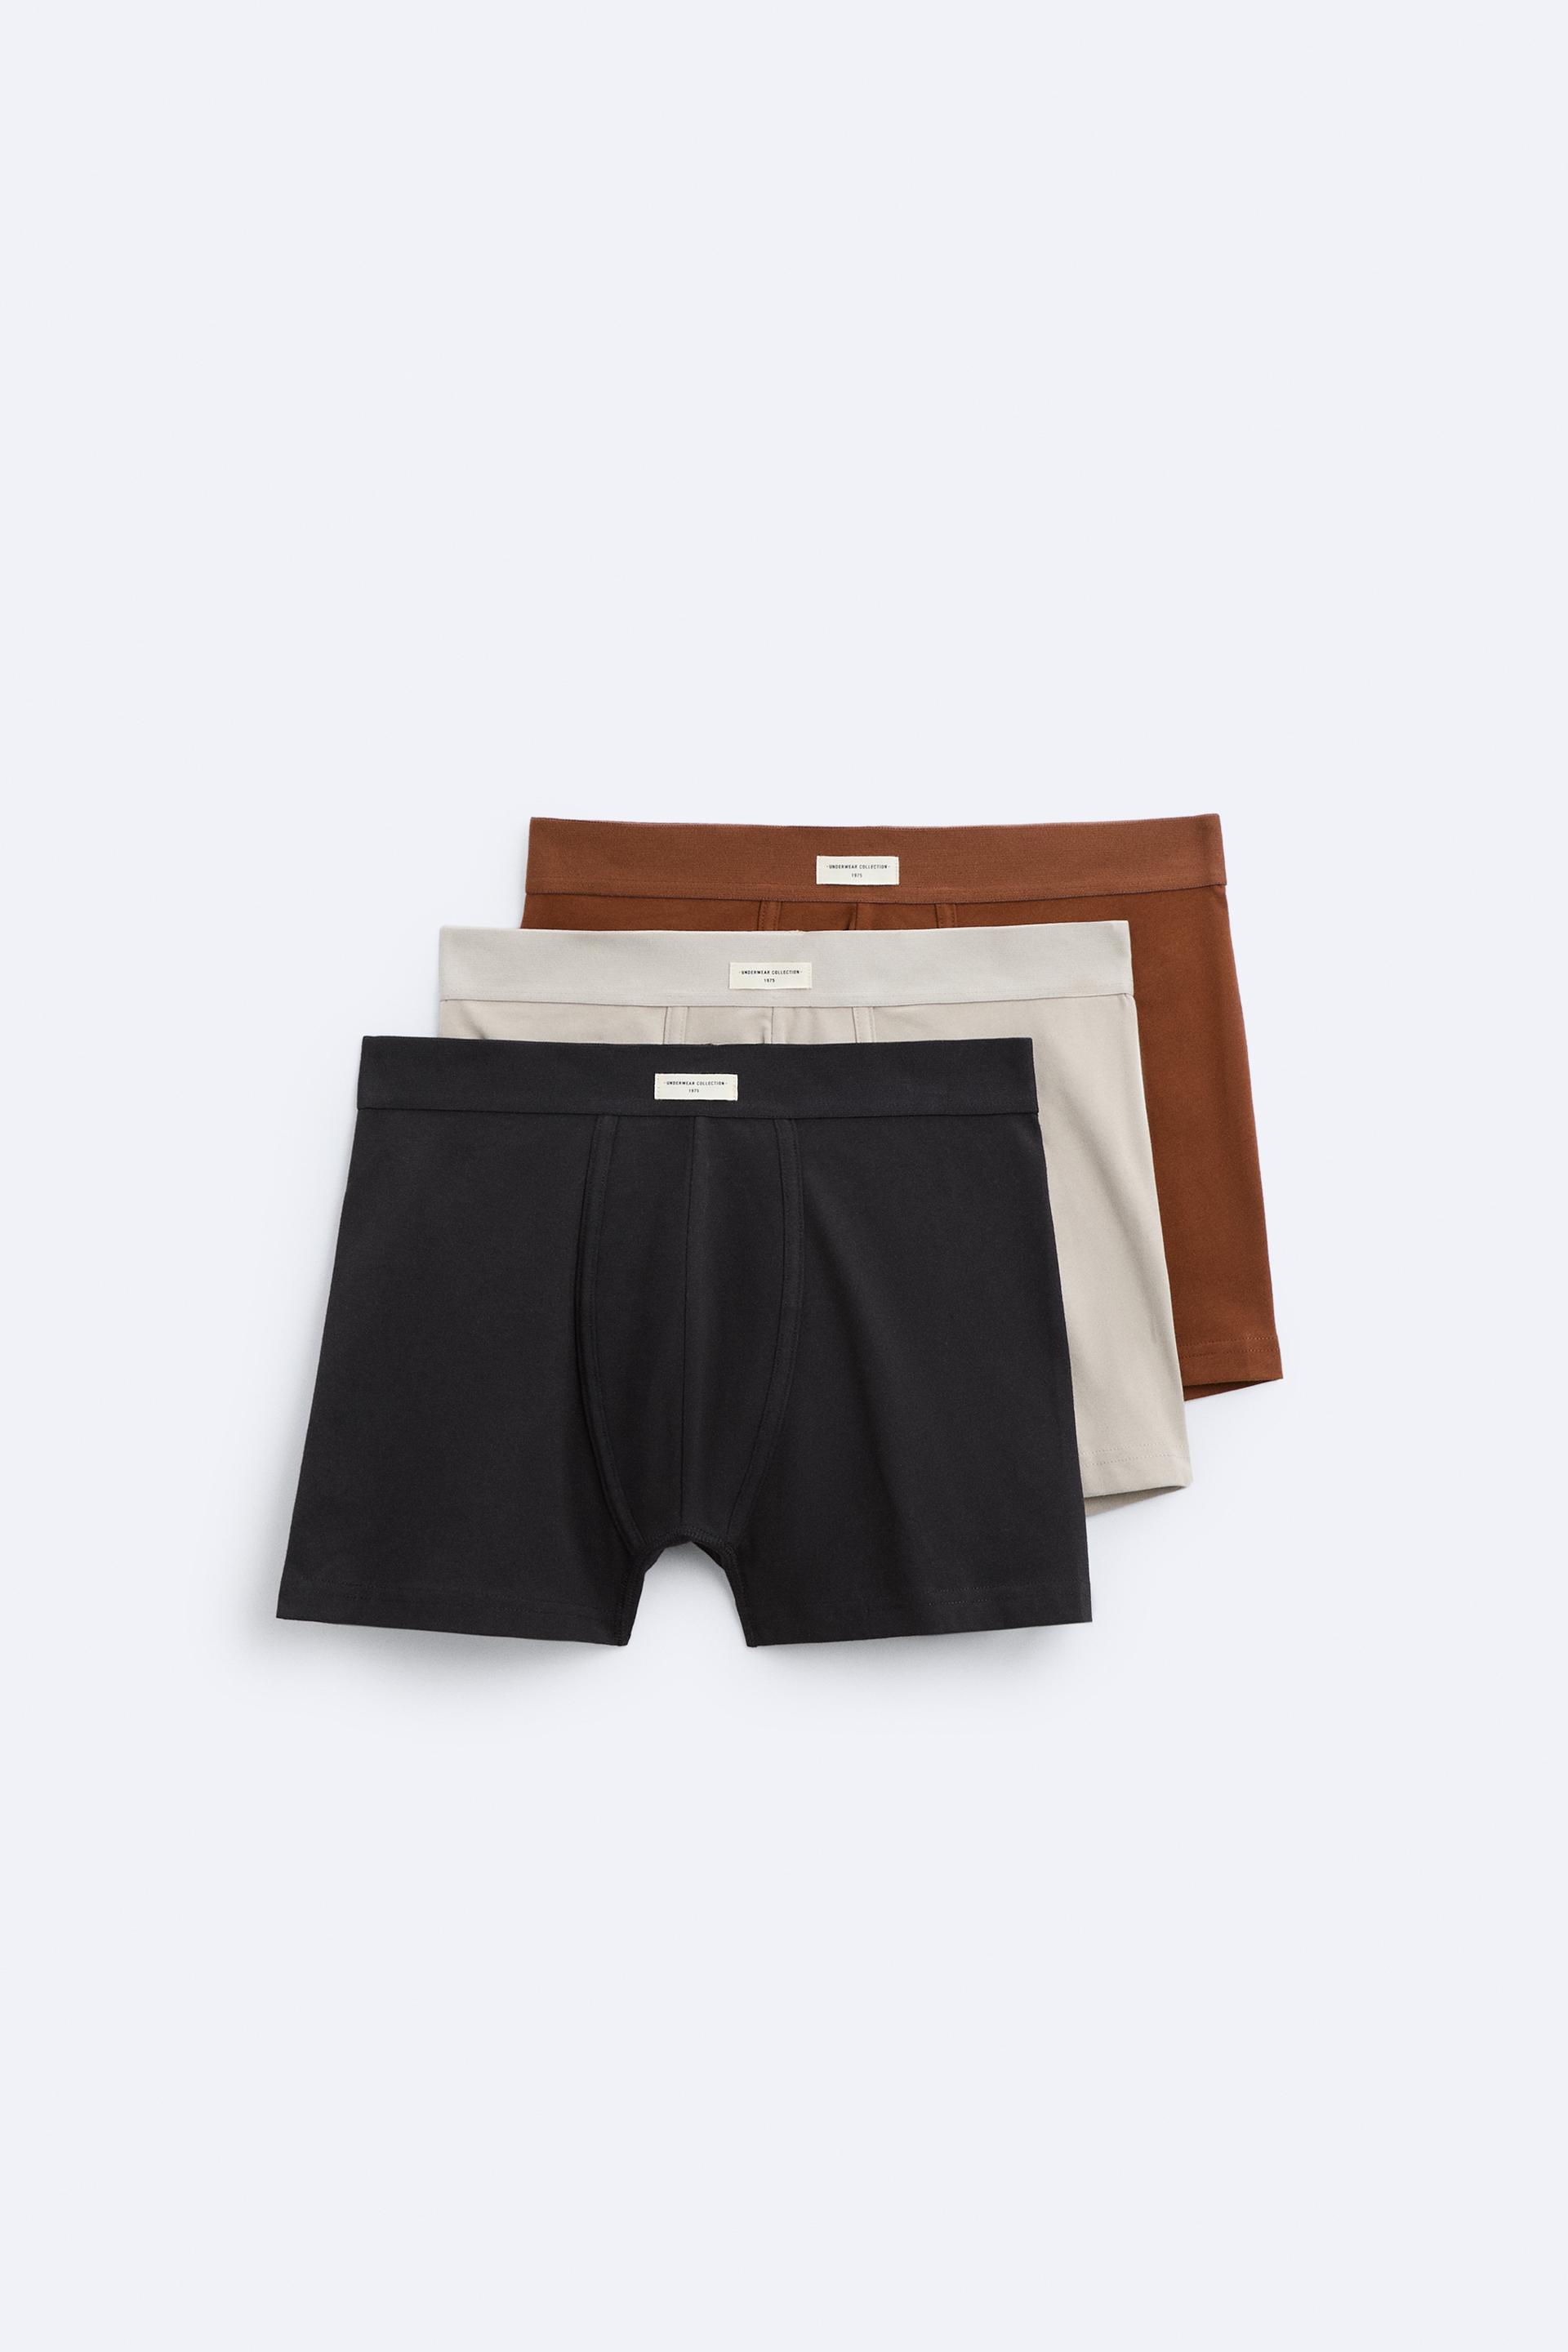 Zara underwear - Men - 1745820990